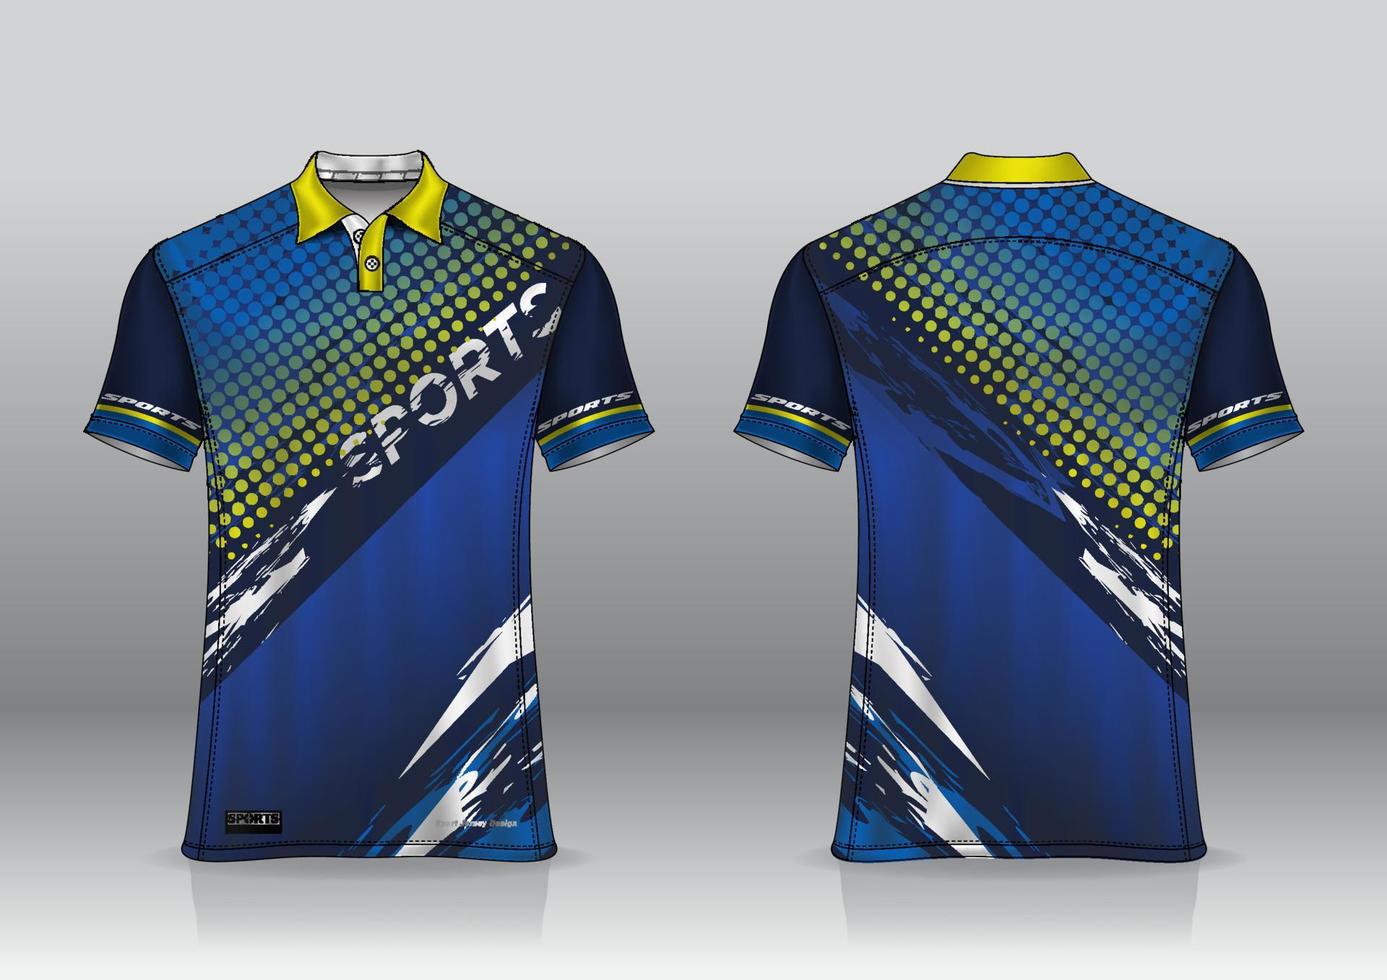 polo shirt uniform design for outdoor sports 8028466 Vector Art at Vecteezy